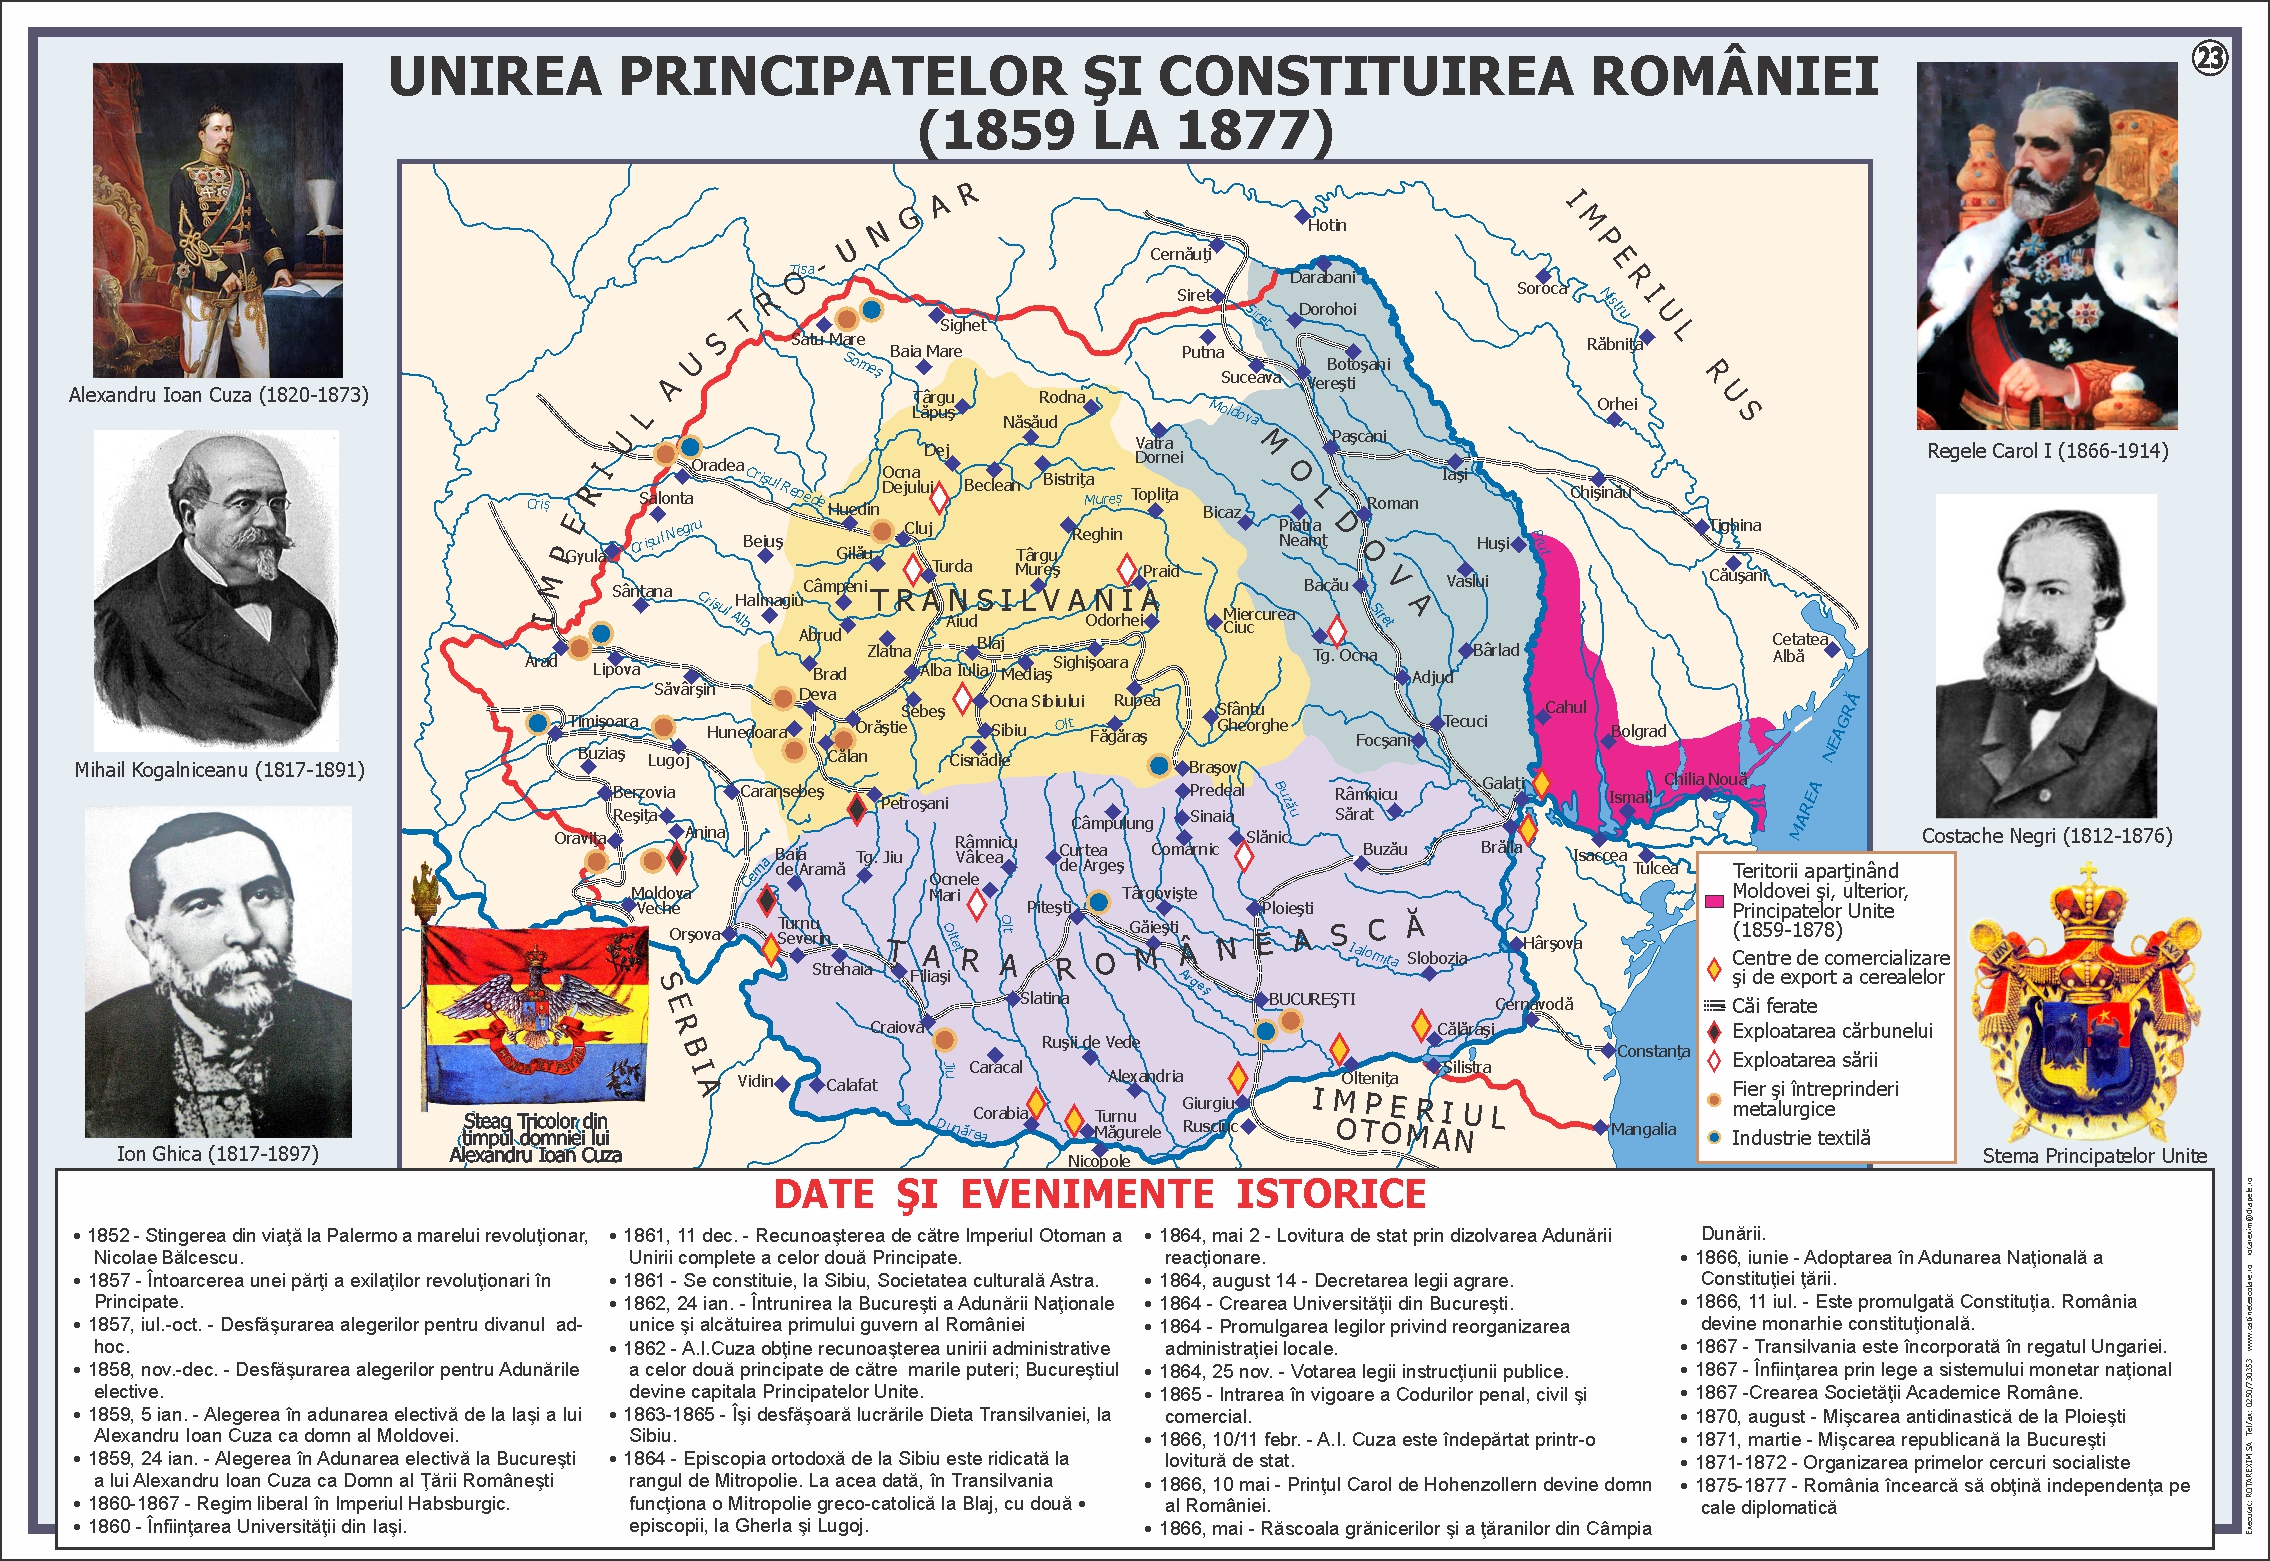 Unirea Principatelor și constituirea României